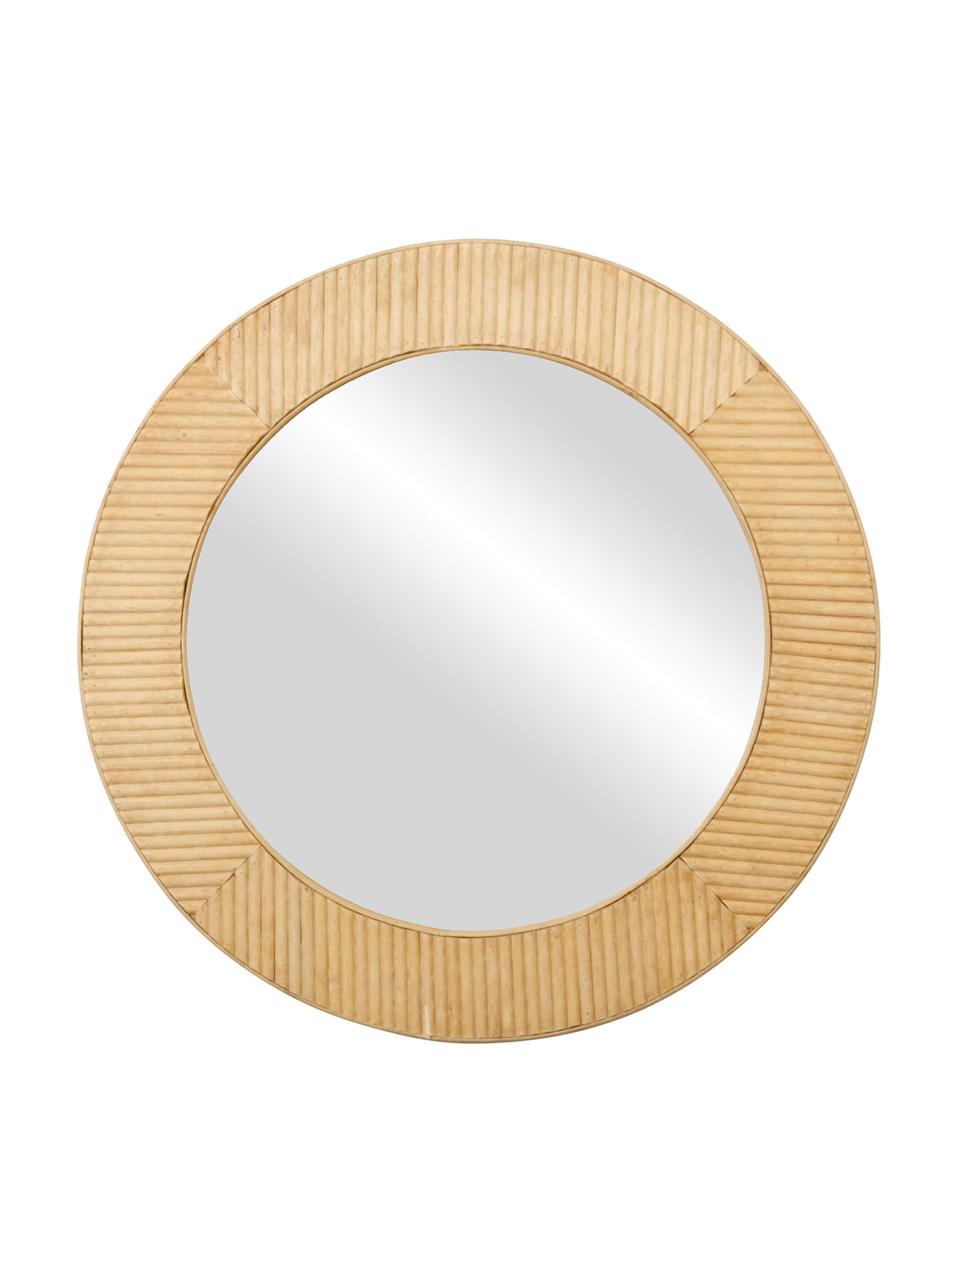 Specchio rotondo da parete con cornice in bambù Solair, Cornice: bambù, Superficie dello specchio: lastra di vetro, Bambù, Ø 60 x Prof. 2 cm